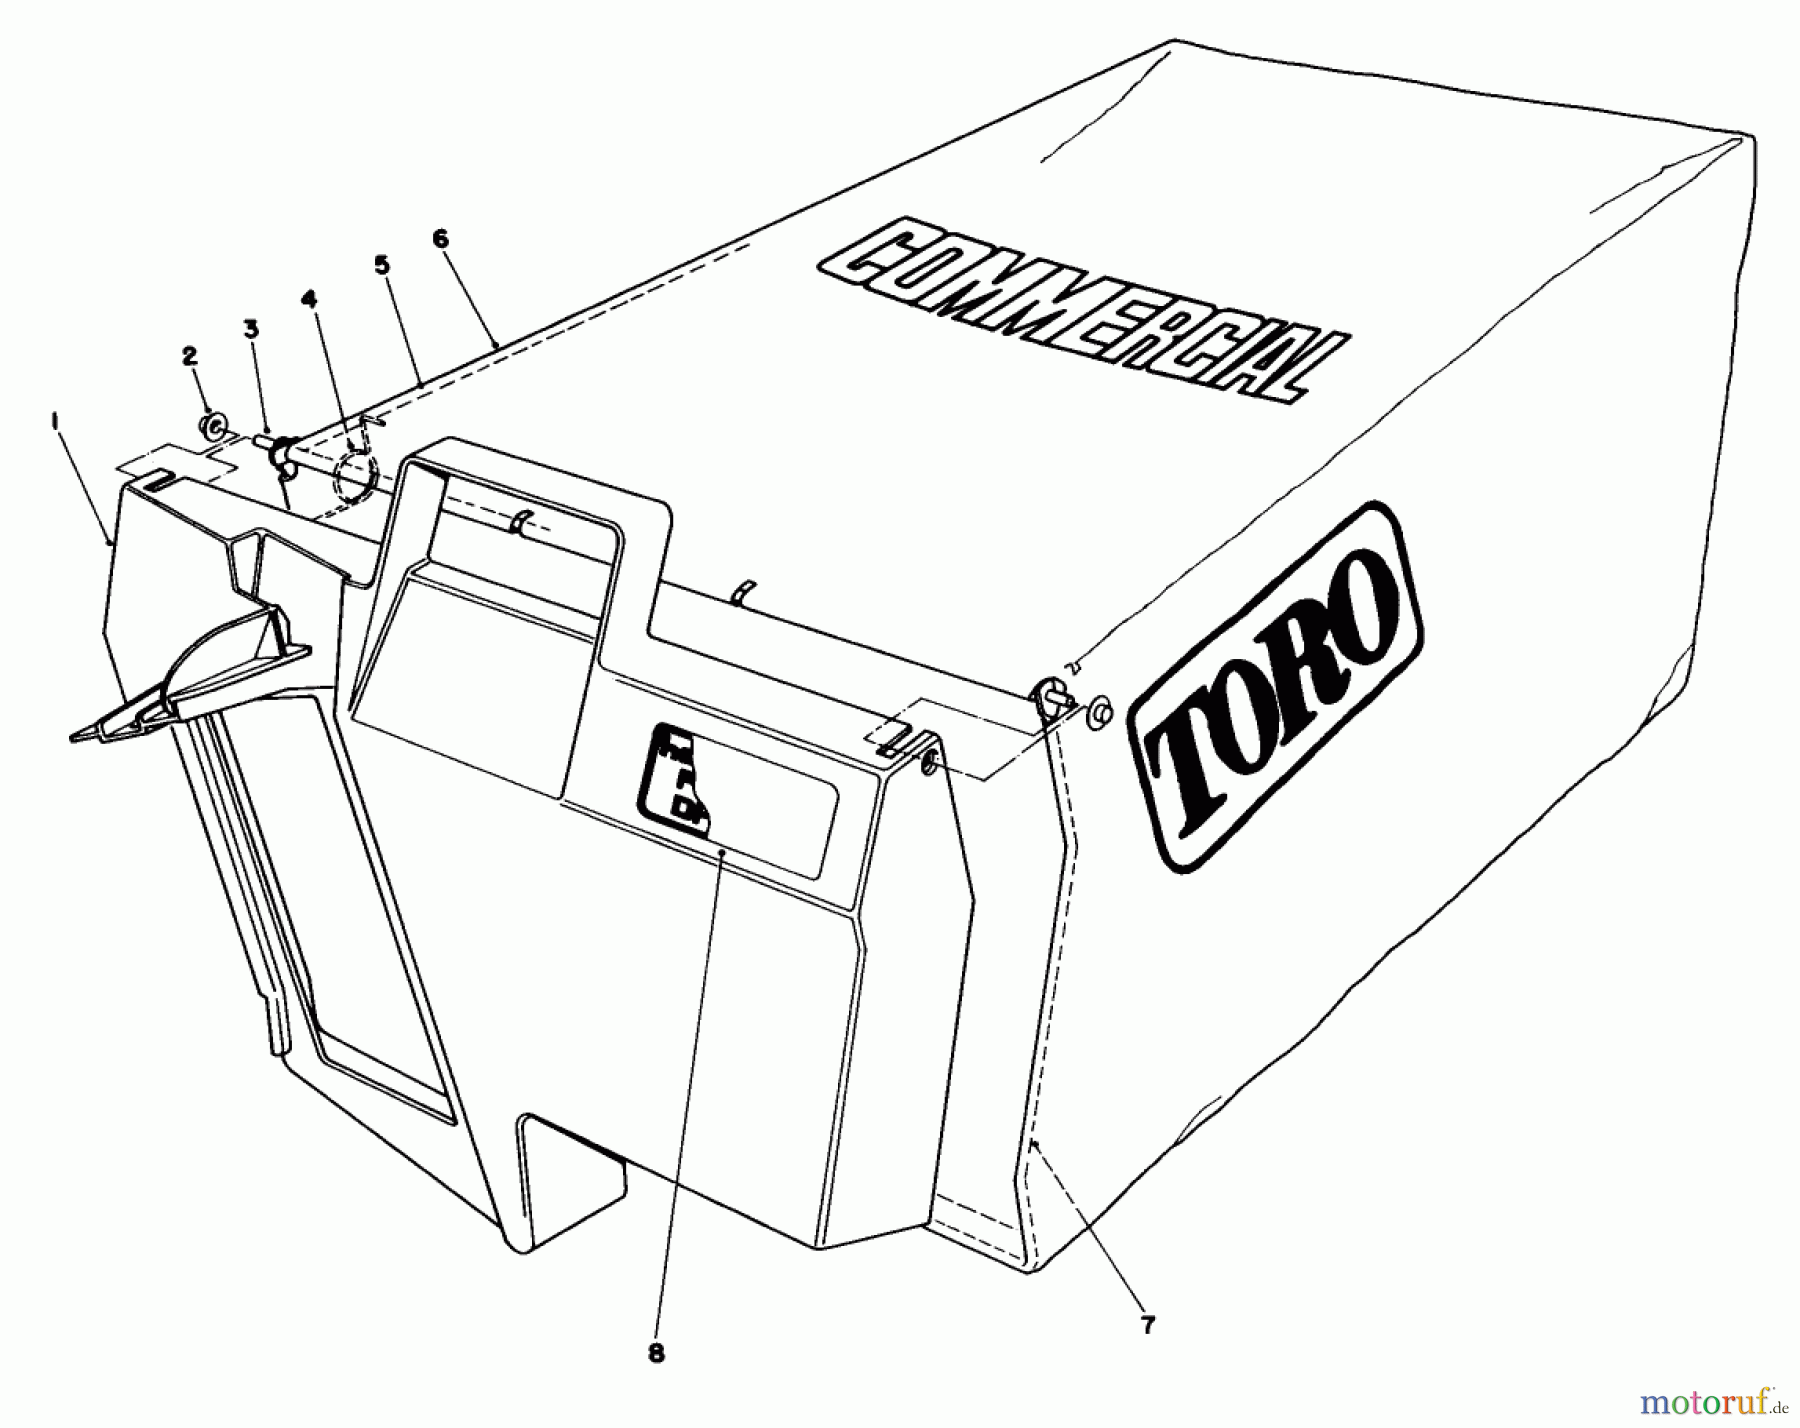  Toro Neu Mowers, Walk-Behind Seite 2 22020 - Toro Lawnmower, 1984 (4000001-4999999) GRASS BAG ASSEMBLY NO. 11-5609